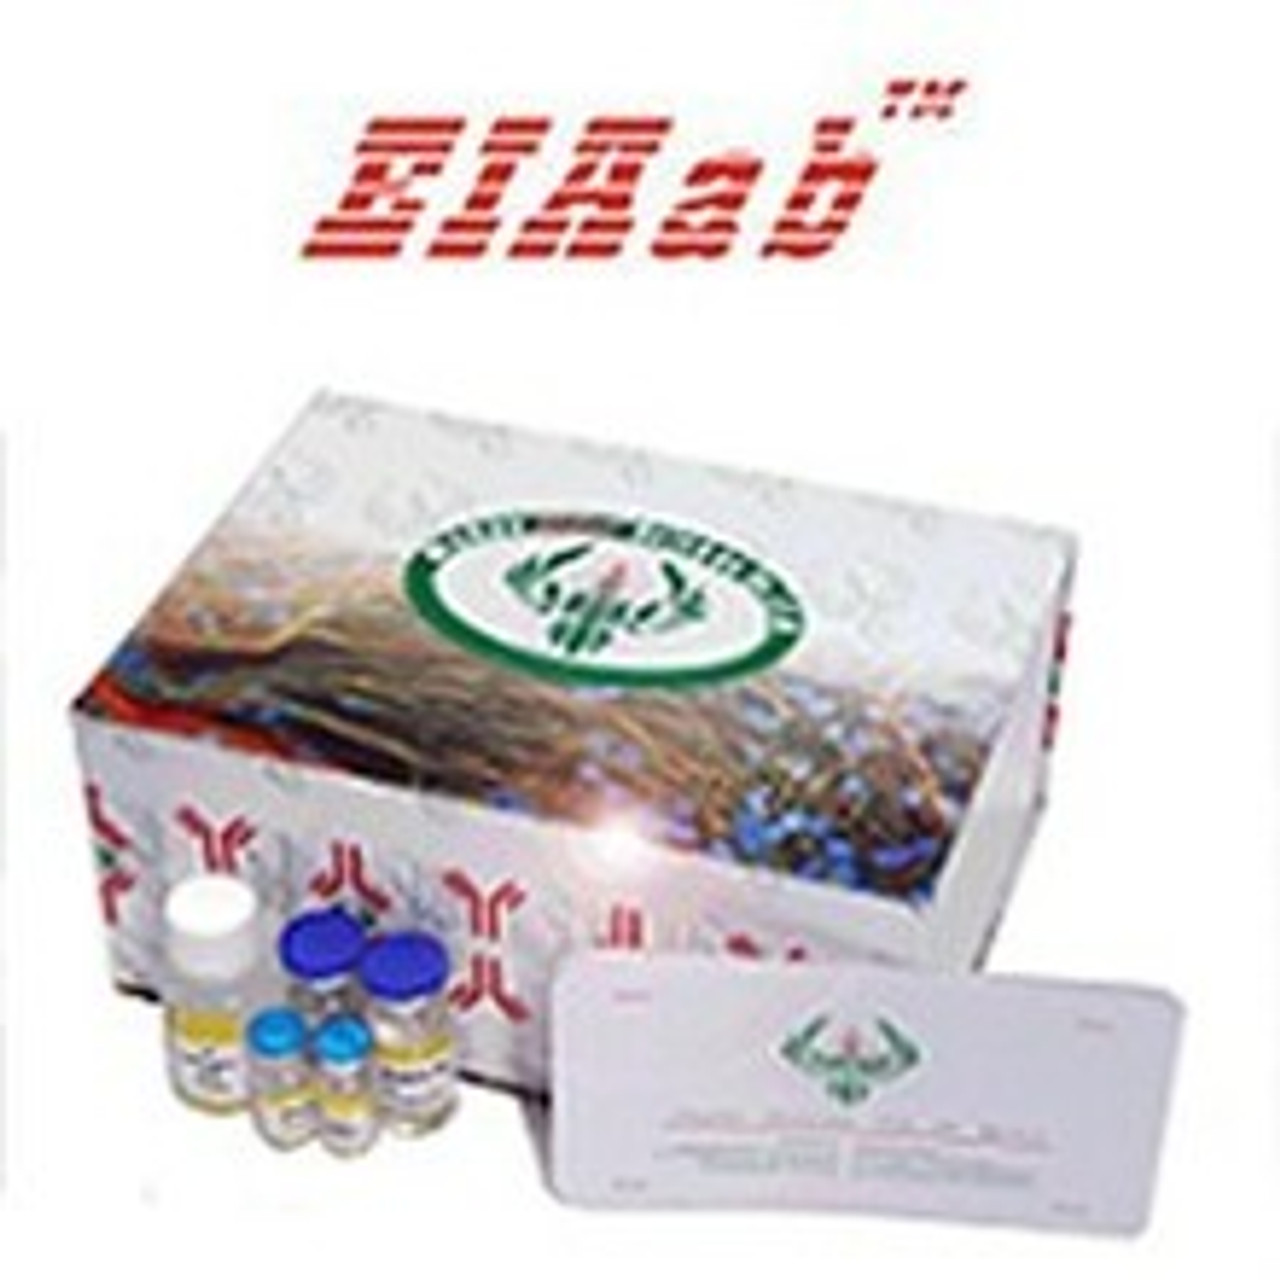 Human CEL/Bile salt-activated lipase ELISA Kit